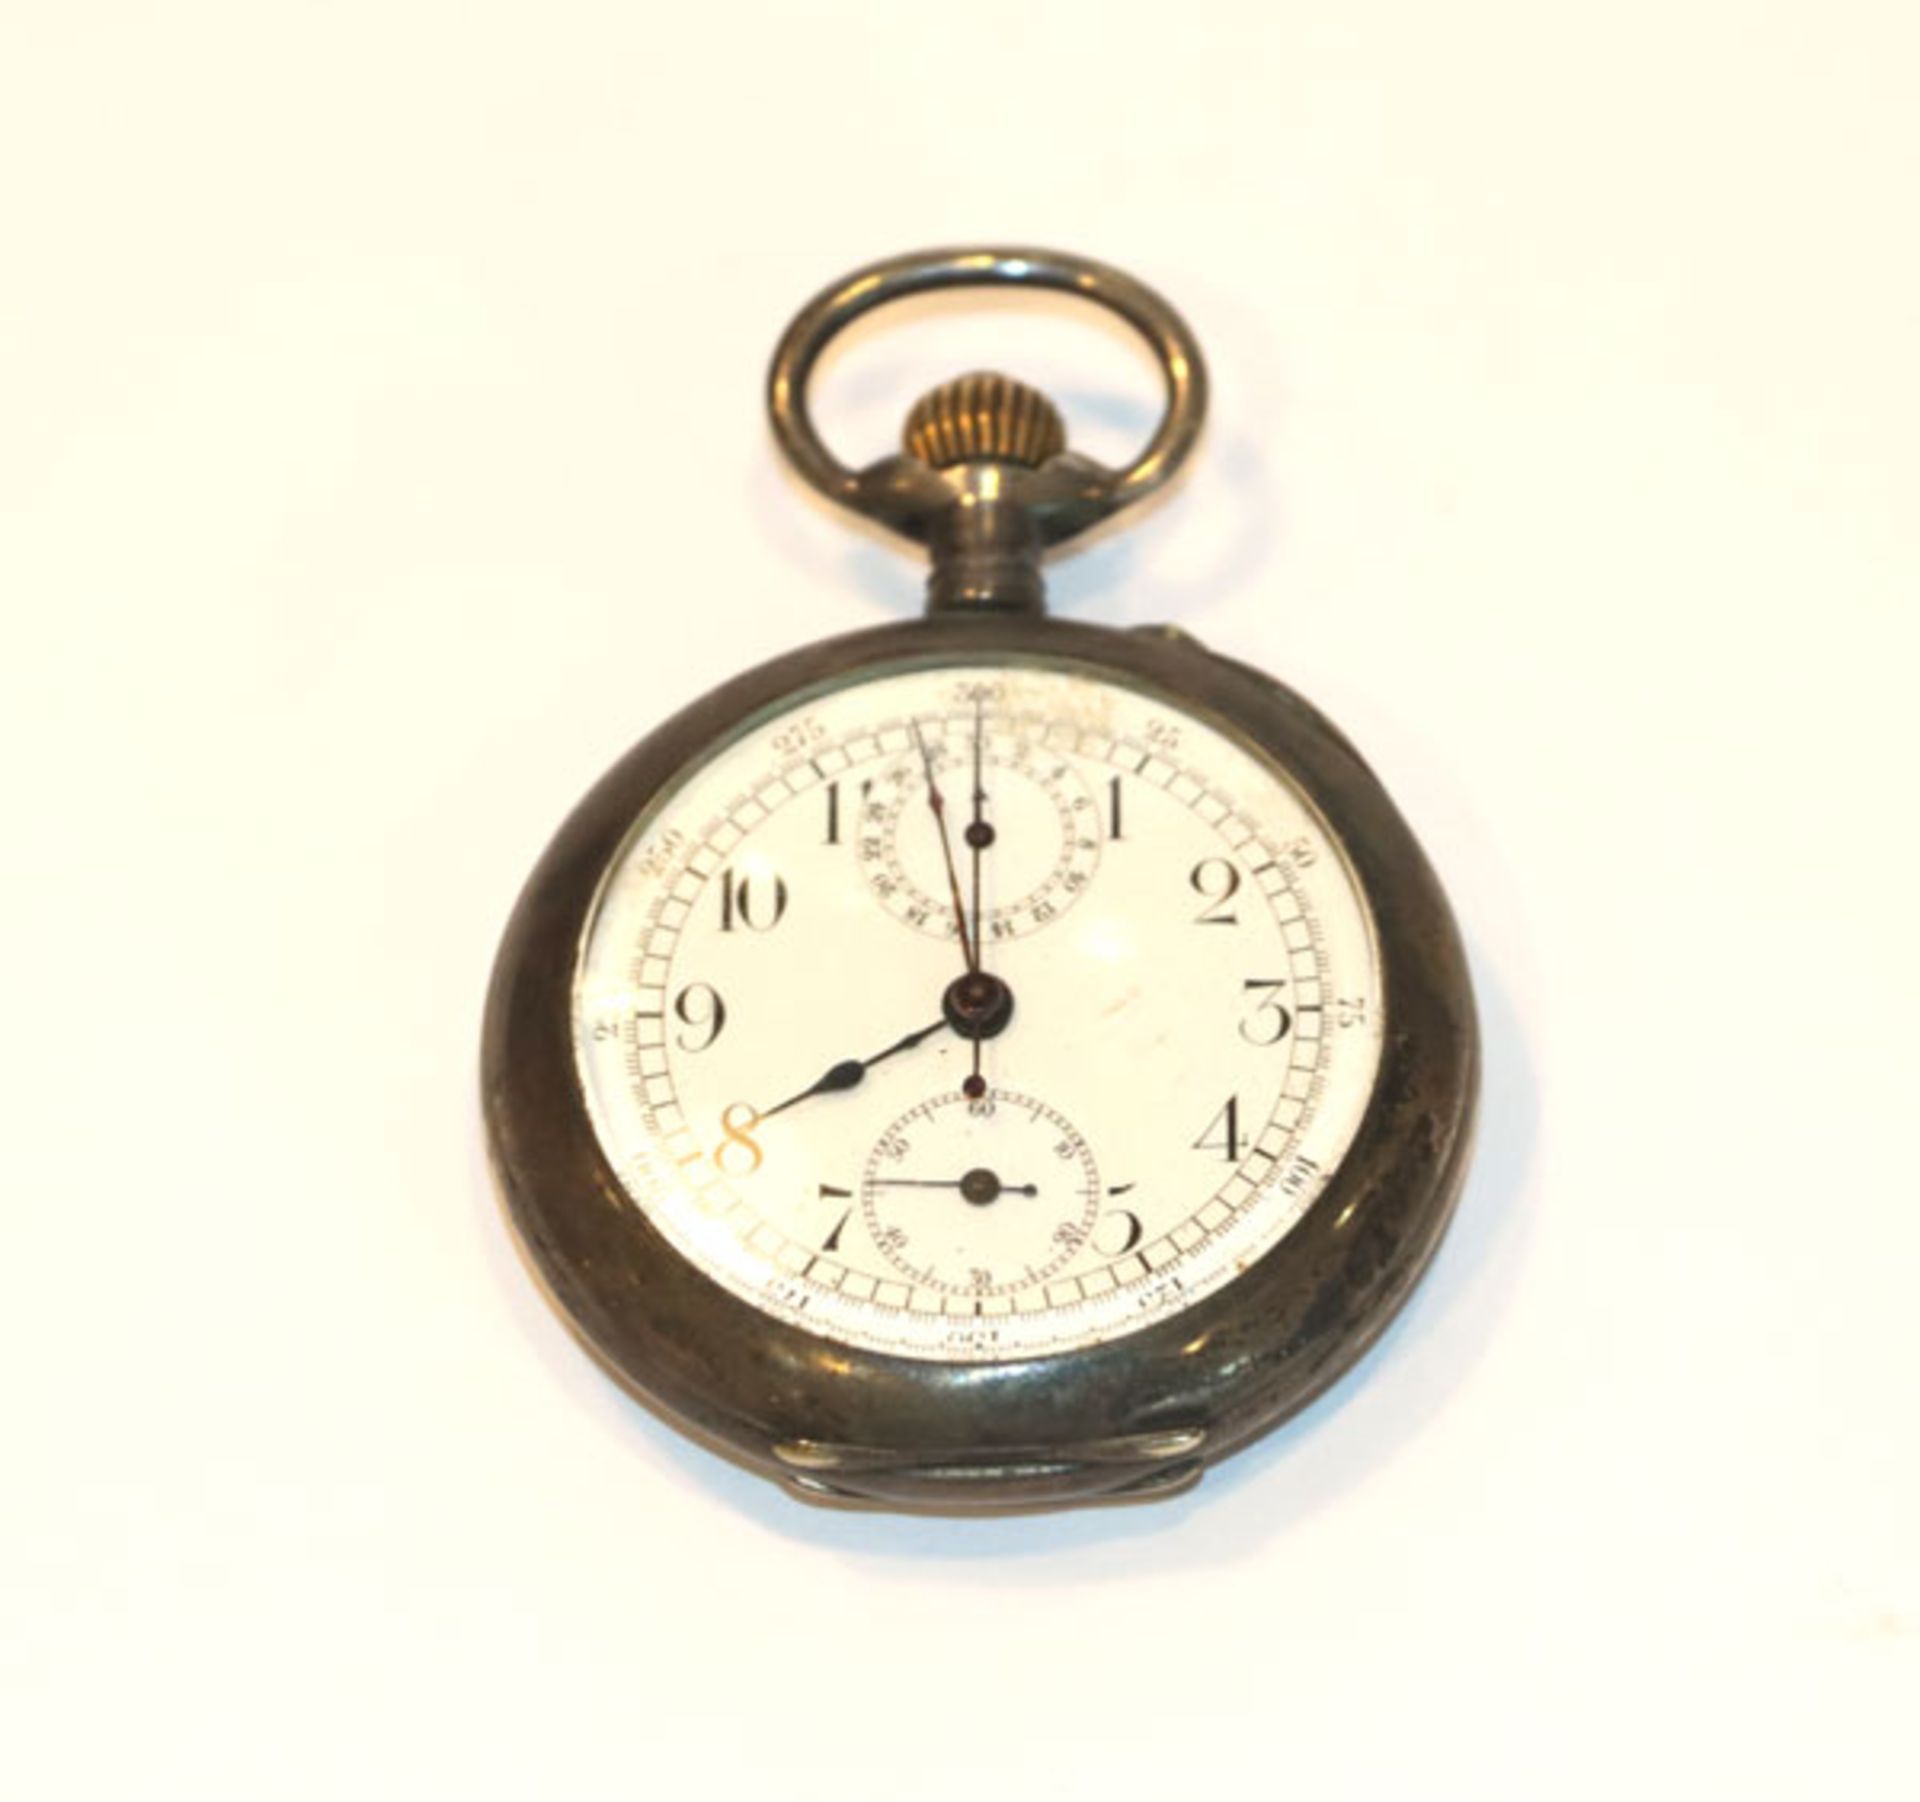 800 Silber Chronograph, Taschenuhr, schönes Werk, nicht intakt, D 5 cm, Gebrauchsspuren